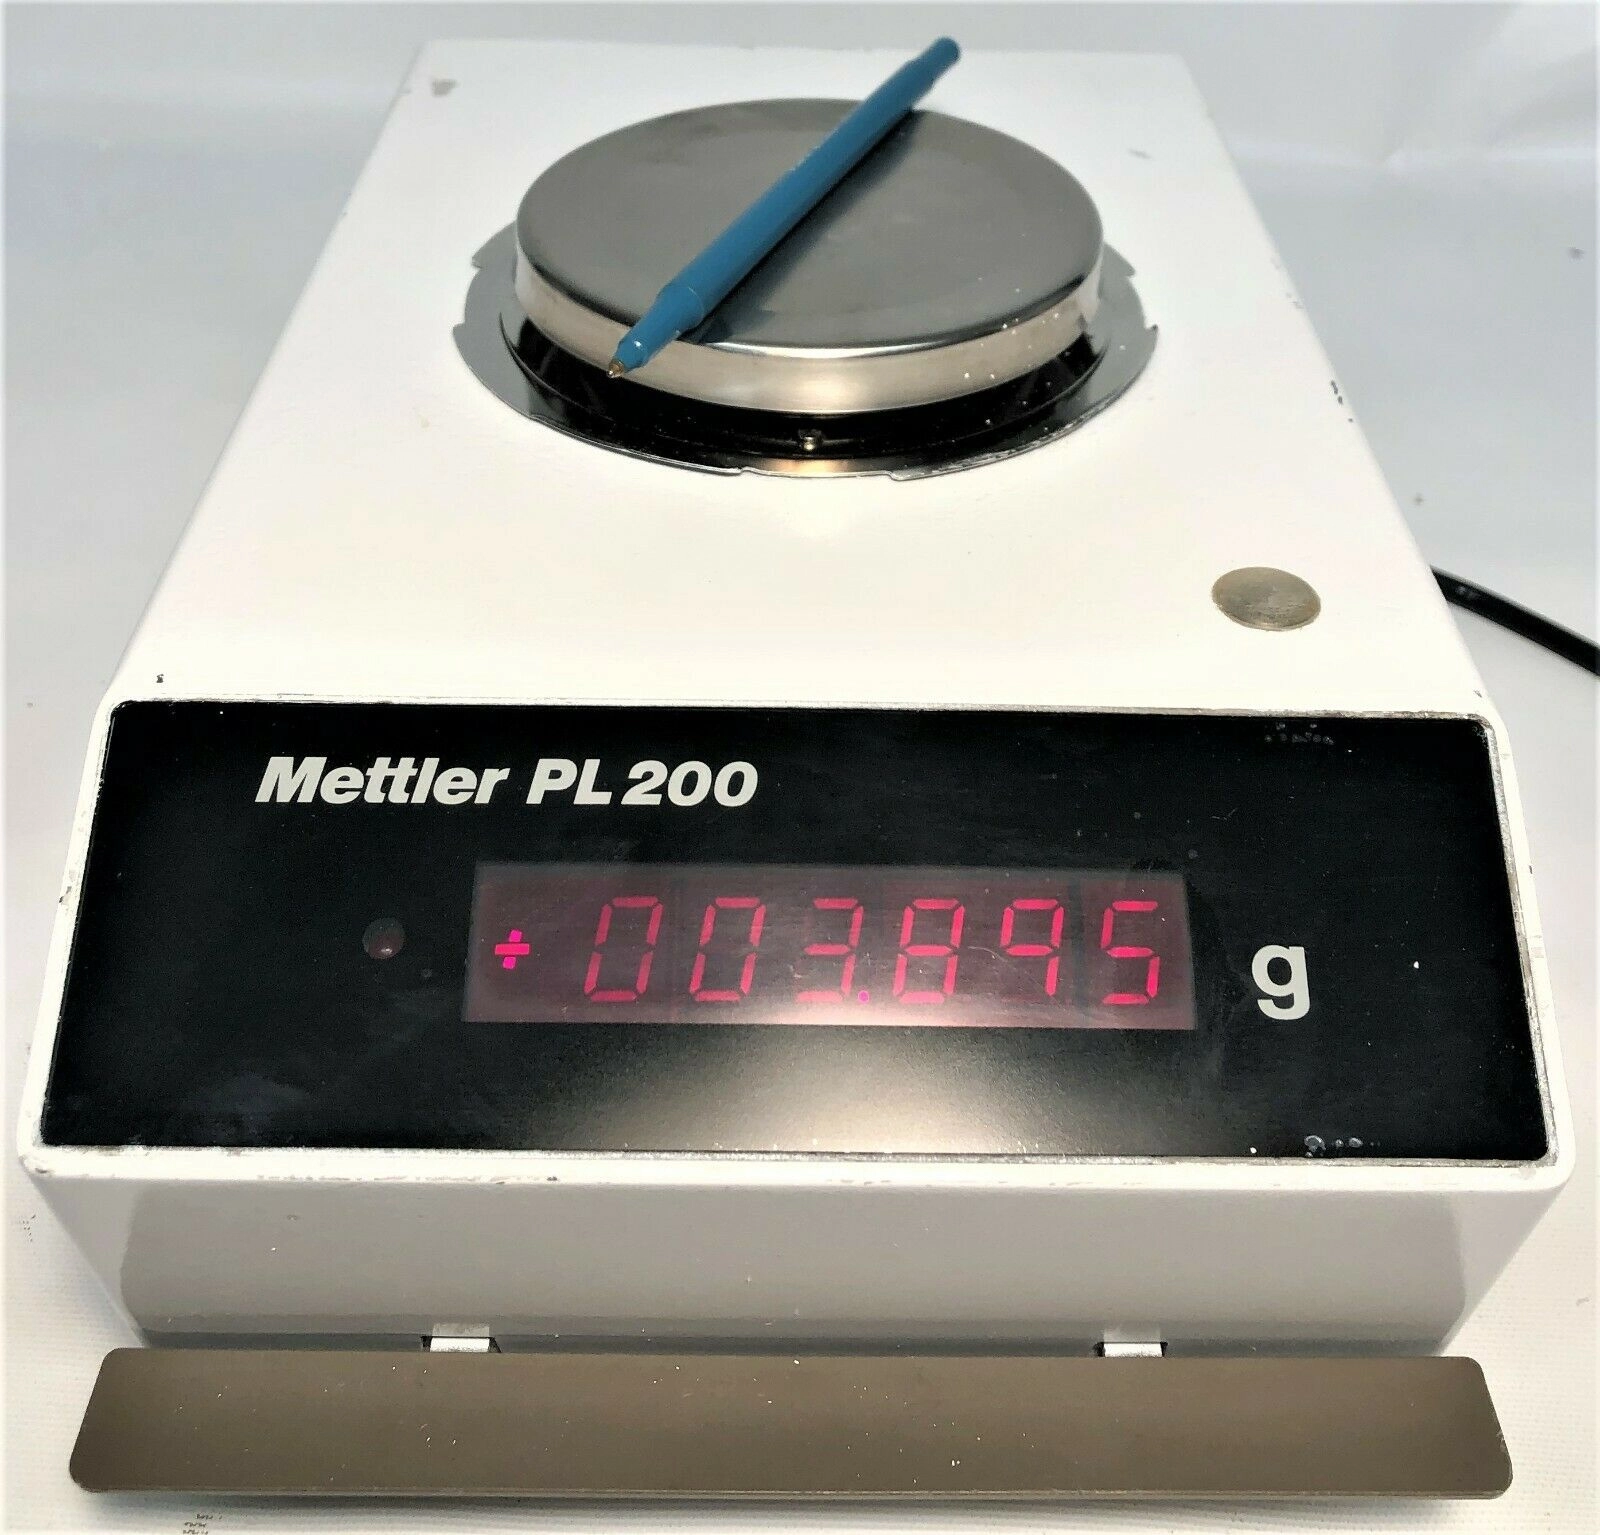 Mettler PL200 Balance -  200g x 0.01g